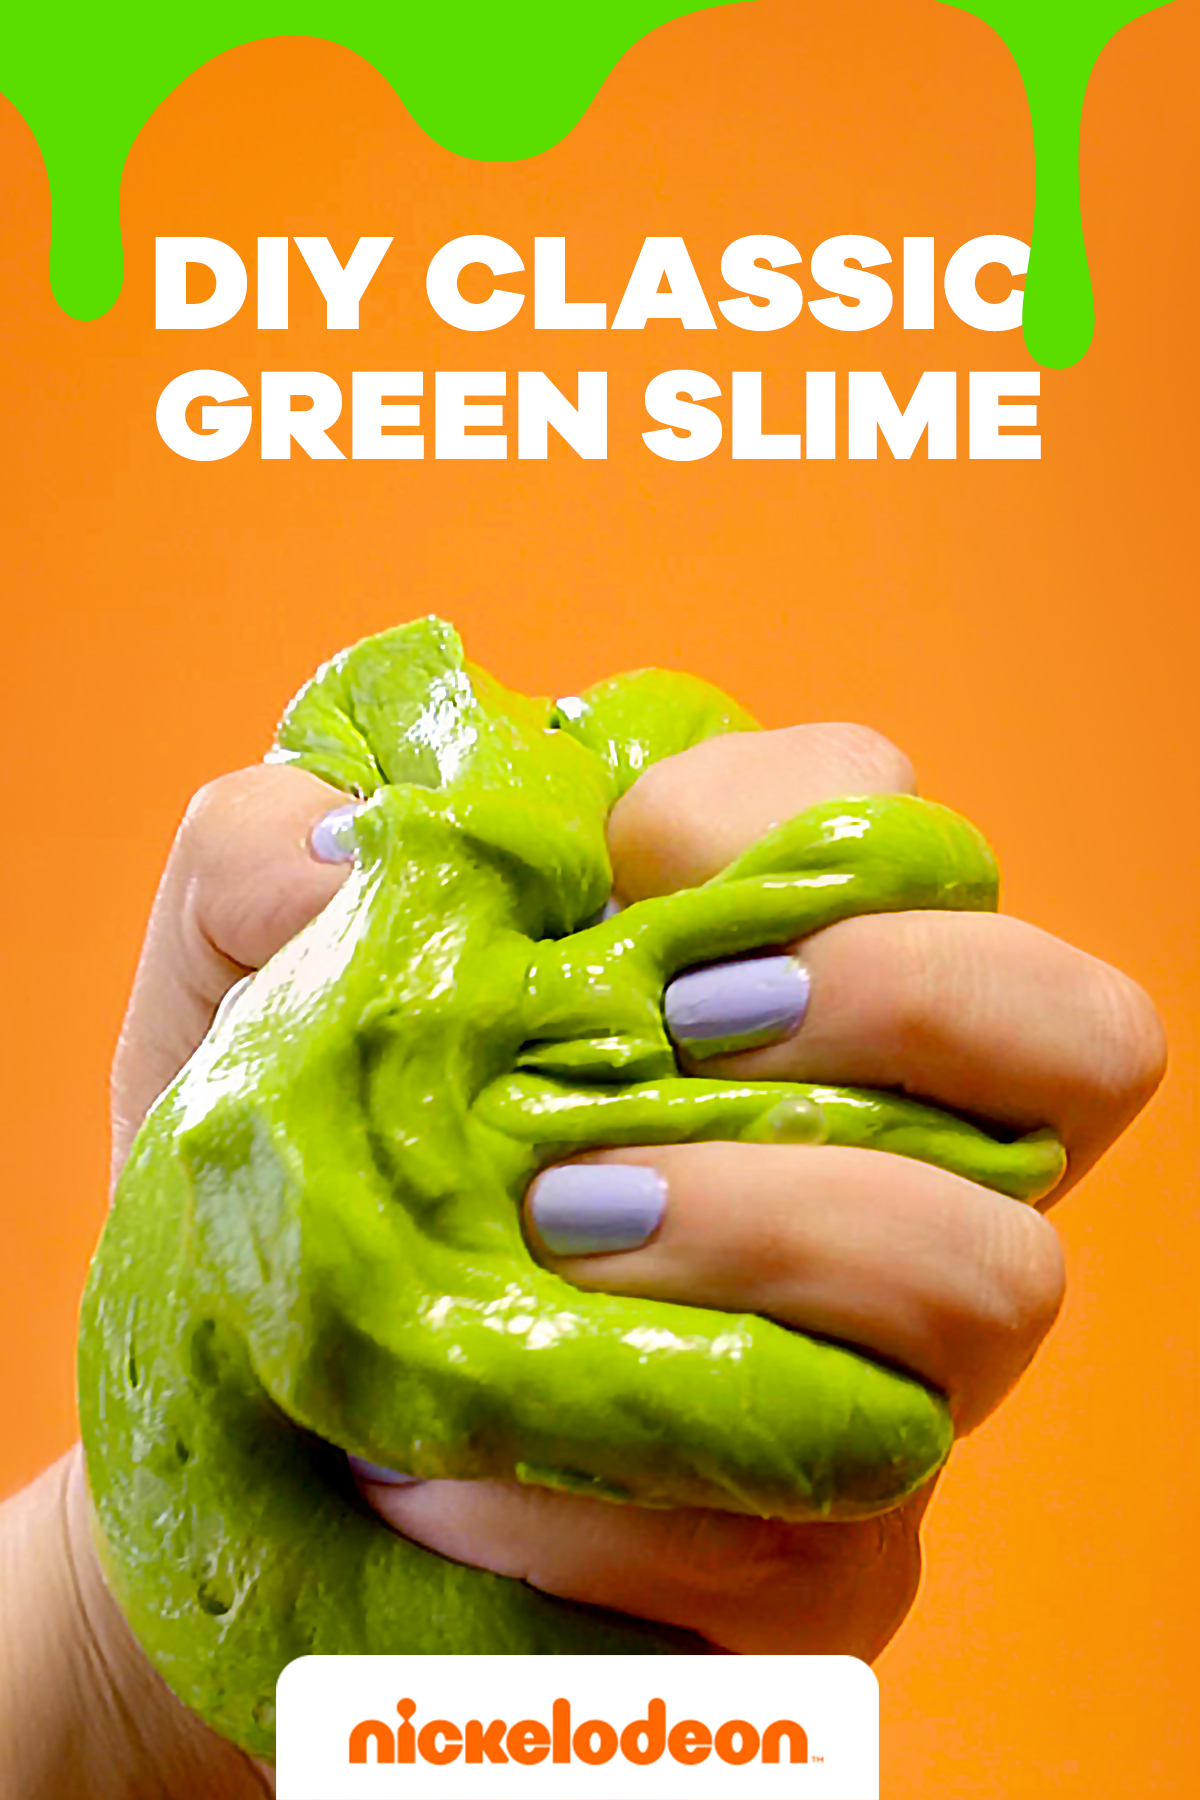 DIY Slime, Make your own slime